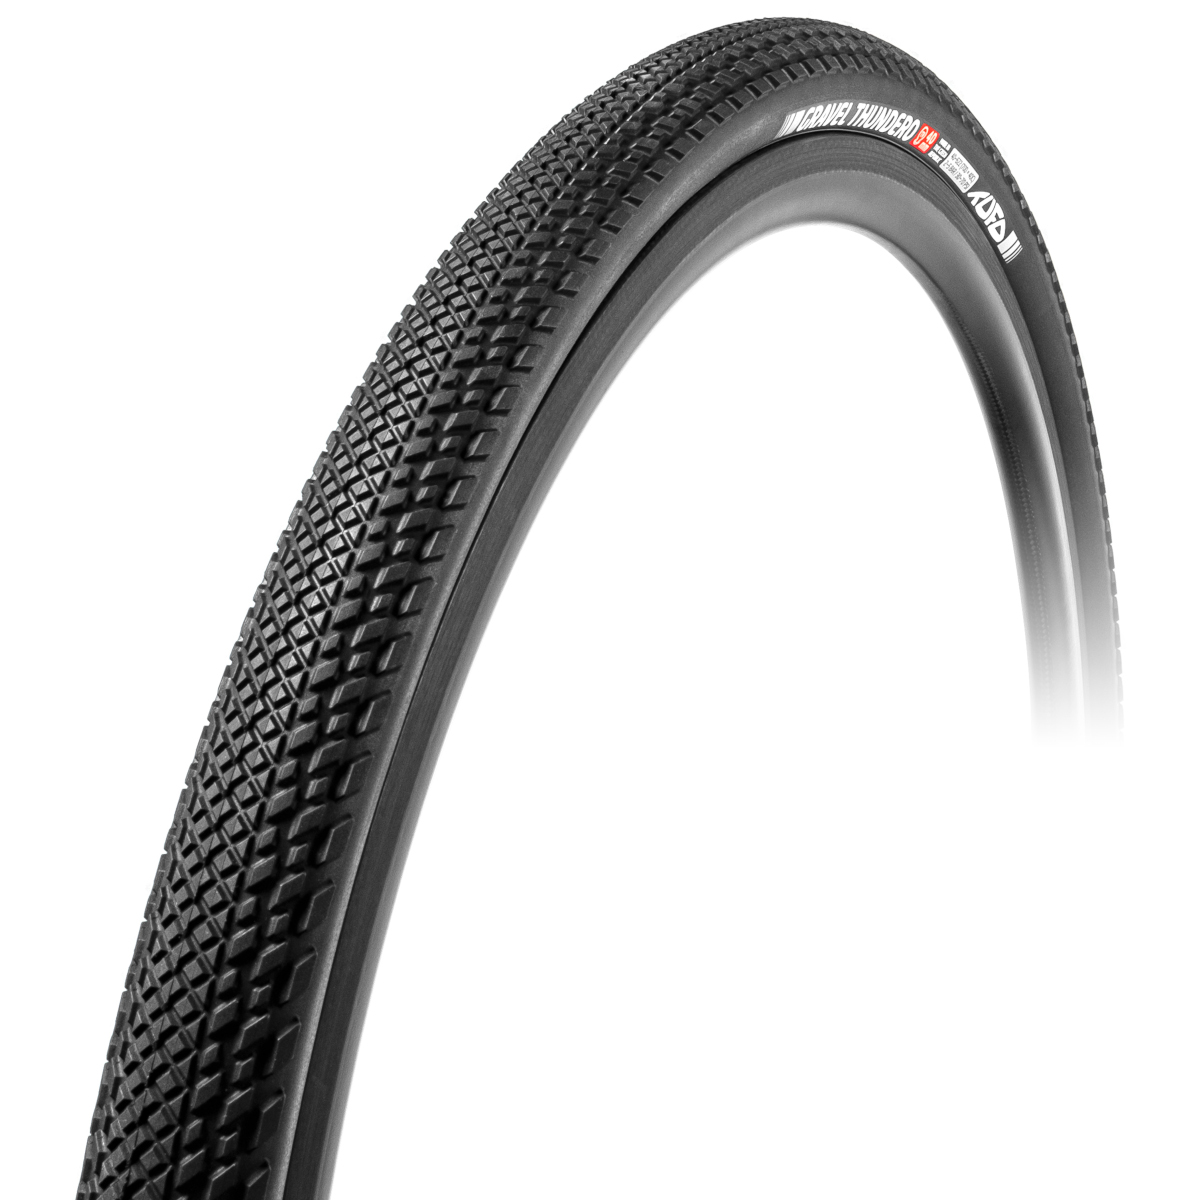 Productfoto van Tufo Gravel Thundero Folding Tire - 36-622 - black